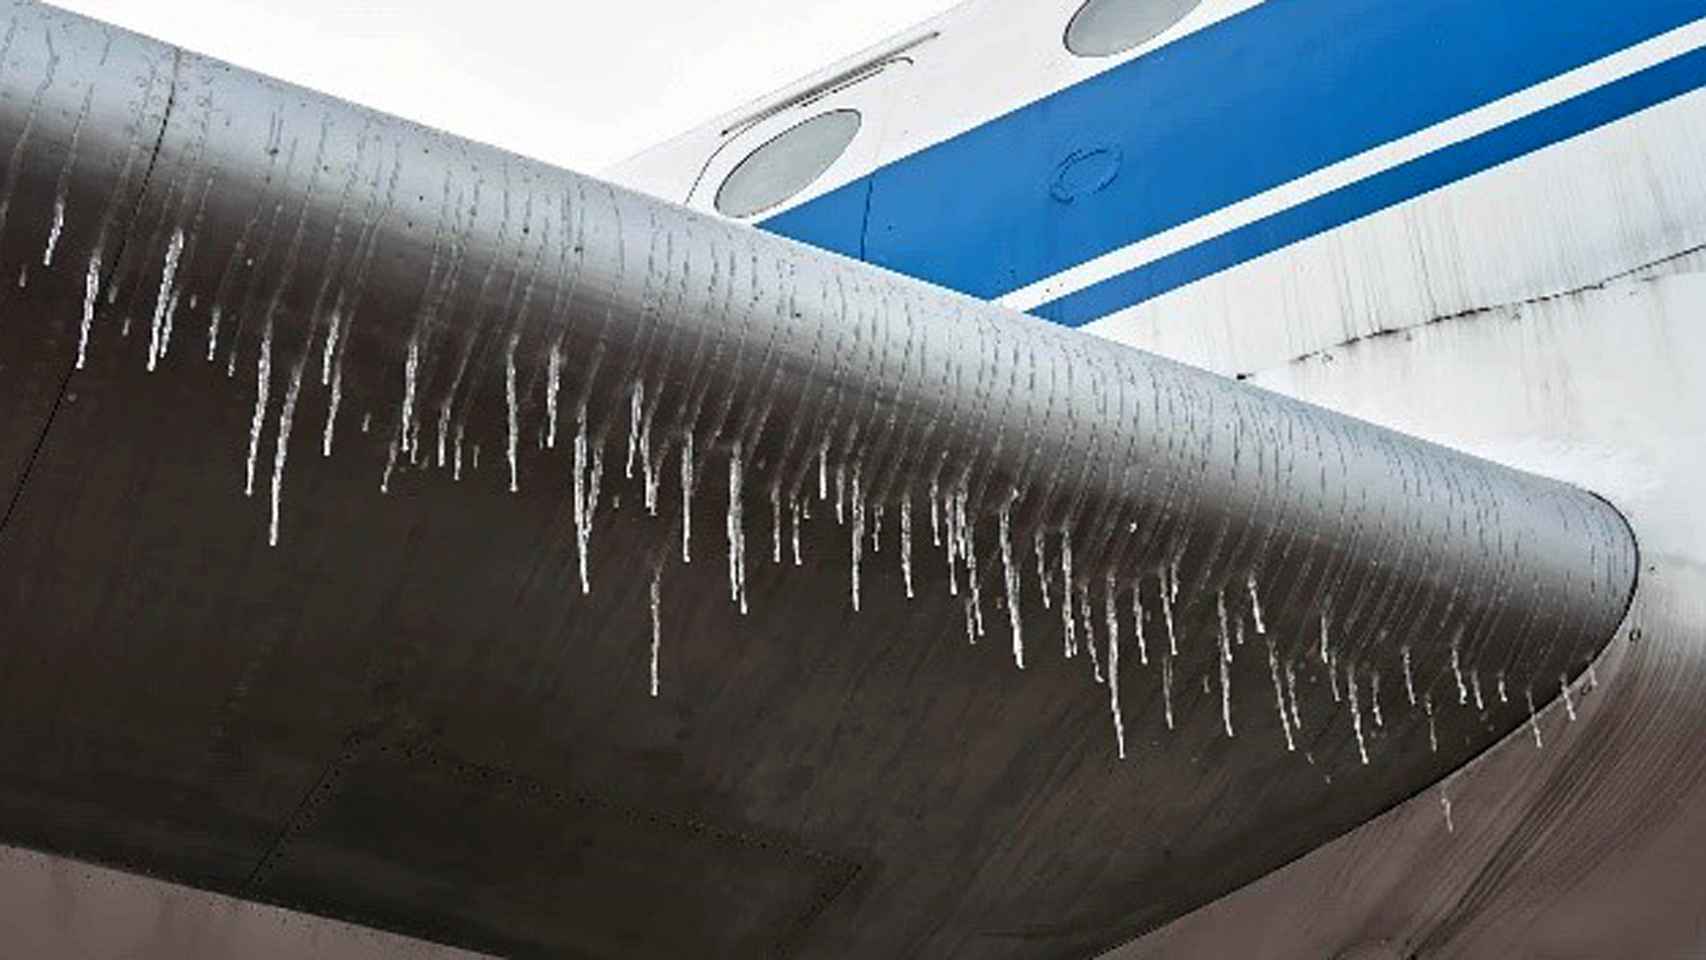 SOUNDofICE evitaría la formación de hielo en las aeronaves de forma más eficiente.